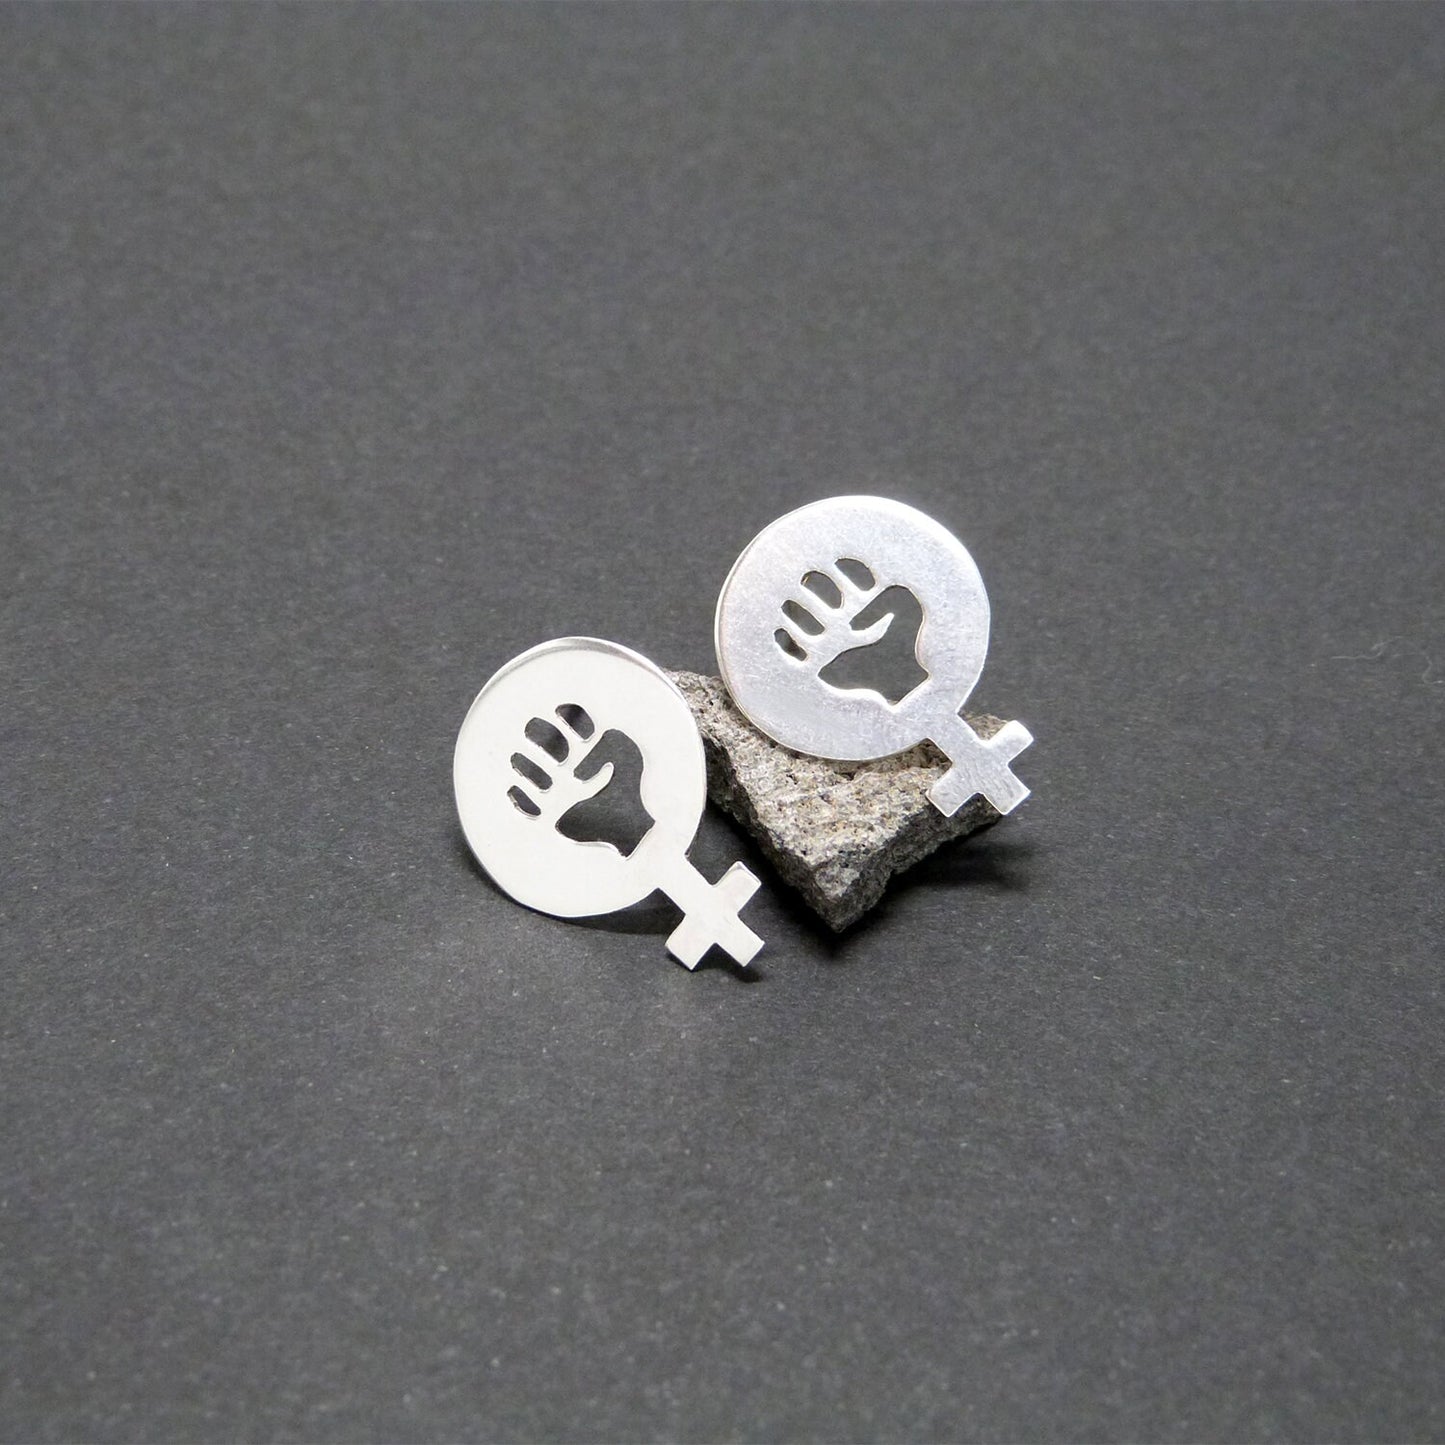 Women Power 02 earrings in 925 silver